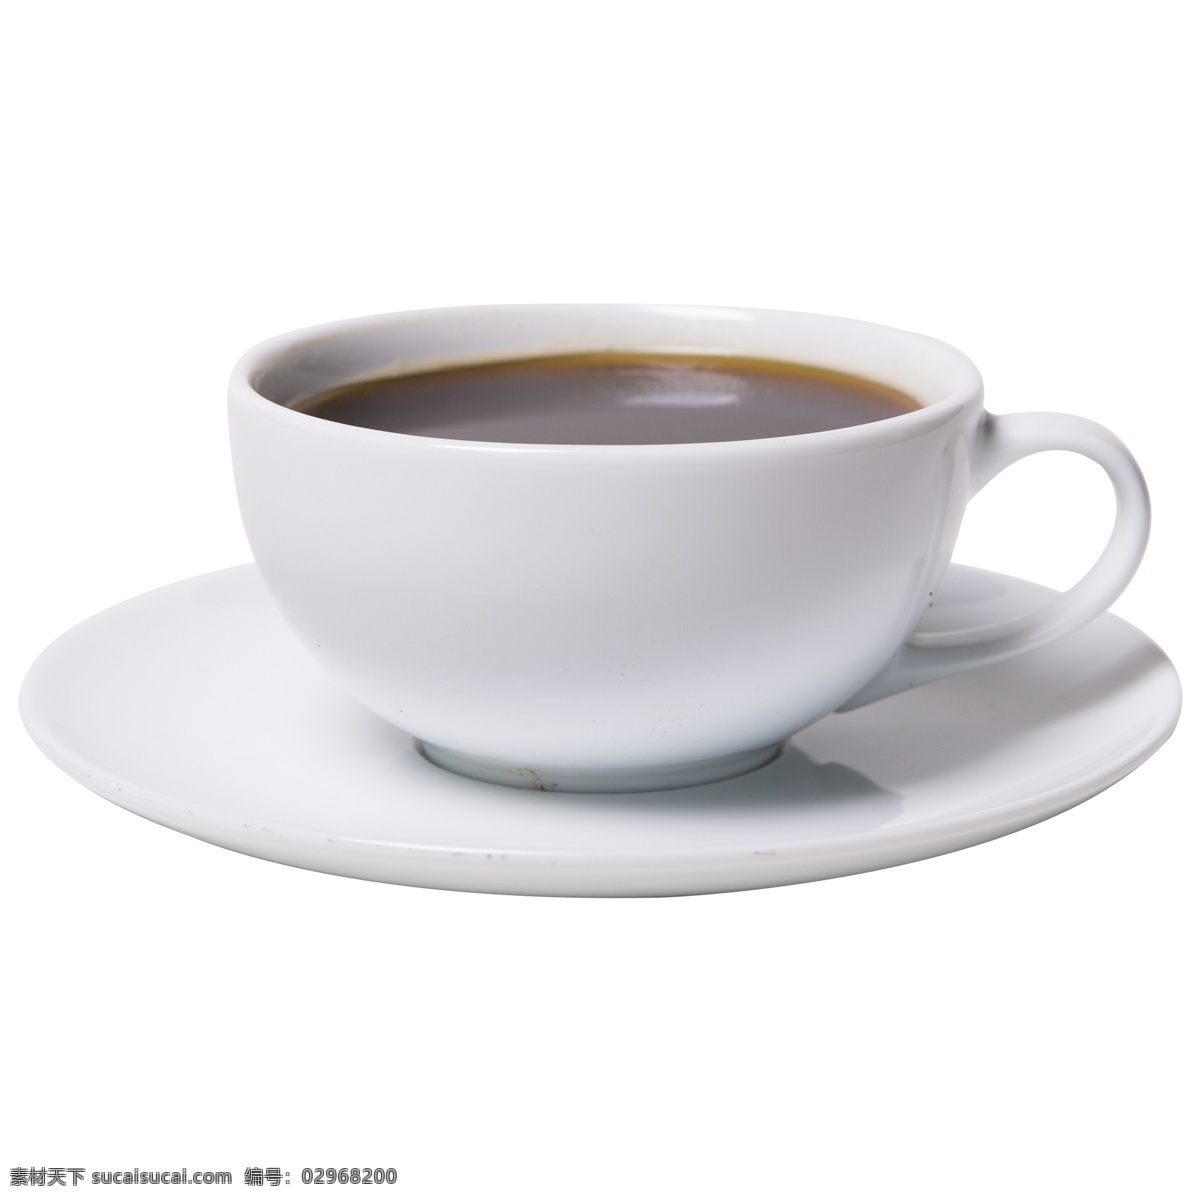 下午 茶 热饮 美式 黑 咖啡 饮品 咖啡杯子 陶瓷 黑咖啡 香醇 休闲下午茶 英式 斋啡